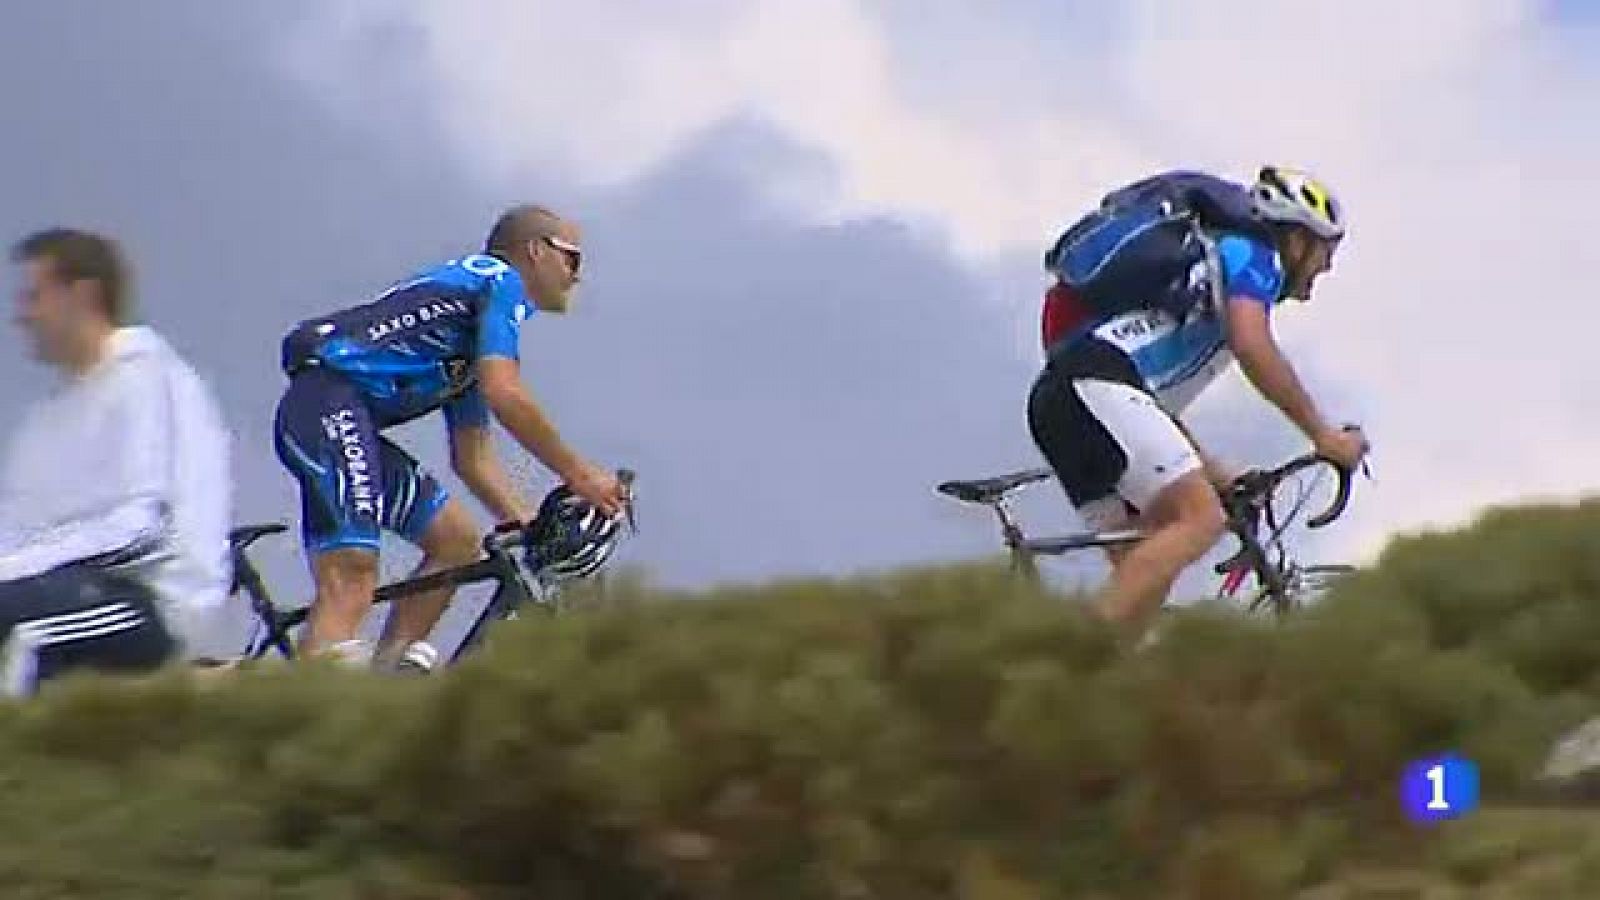 Aunque sea la penúltima etapa de la Vuelta ciclista a España 2012, los gallos de la carrera quieren dar guerra en la última etapa de montaña que discurrirá por la Sierra de Guadarrama.